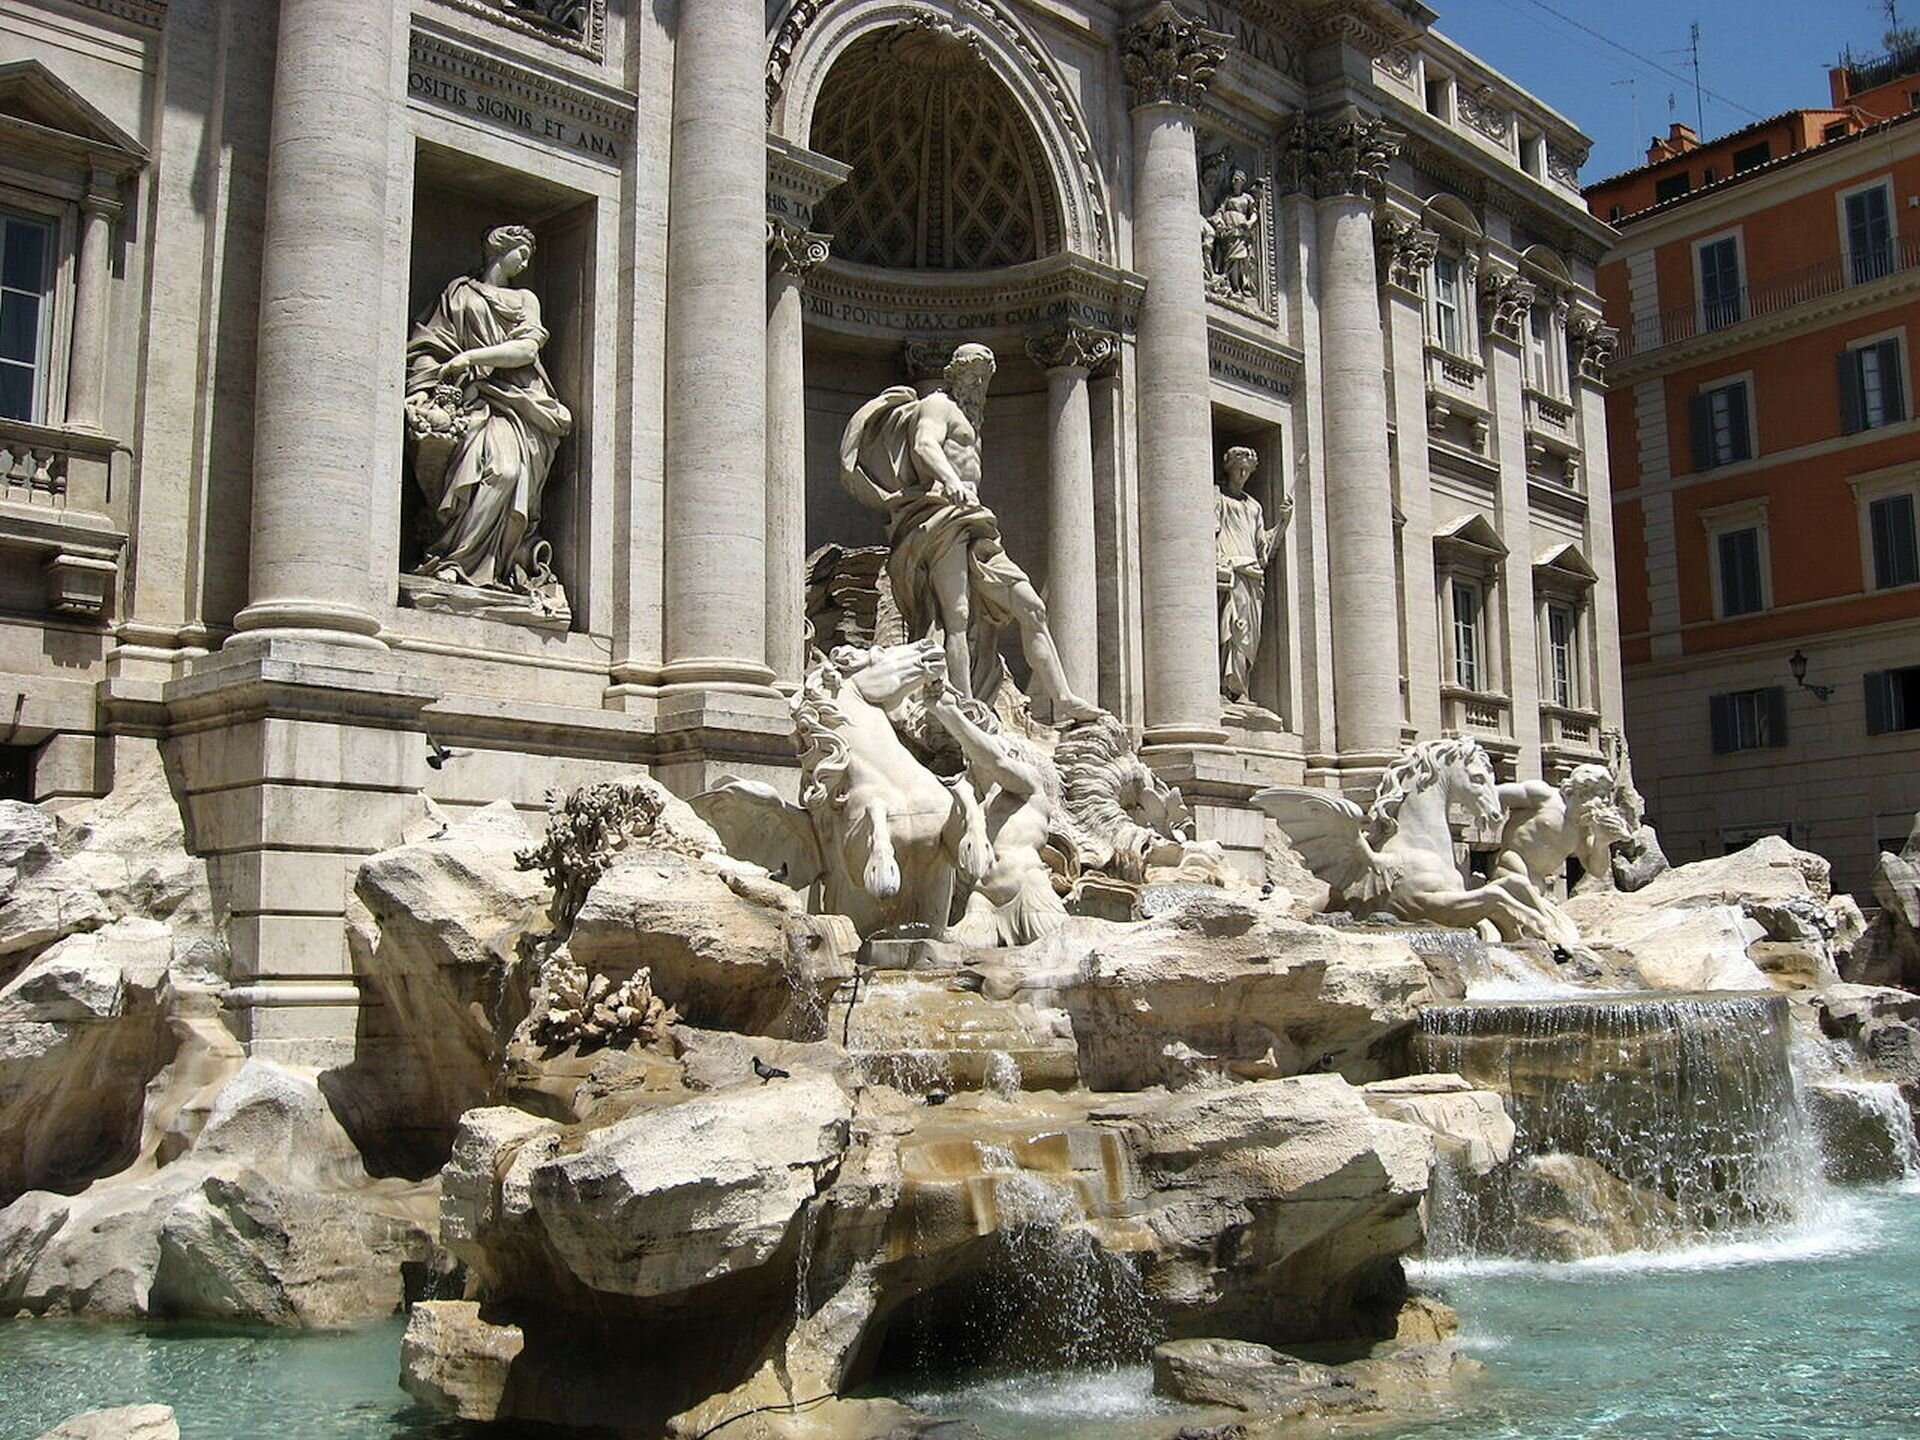 Kolorowa ilustracja przedstawia słynną rzymską fontannę Di Trevi. Na fotografii ukazane jest ujęcie z prawej strony fontanny. Jest to monumentalna budowla składająca się z bogato dekorowanej ściany oraz kamiennych elementów, na których umieszczono rzeźby. W centrum fontanny stoi Neptun w powozie zaprzężonym w hipokampy. Bóg przedstawiony jest w pozycji stojącej. Ma umięśnione ciało i rozwianą przez wiatr szatę. Spogląda w dół powozu. Za boskim rydwanem, w niszach ściennych, znajdują się kobiece postaci będące alegoriami Zdrowia i Obfitości. Ze skalnych elementów spływa do basenu woda.